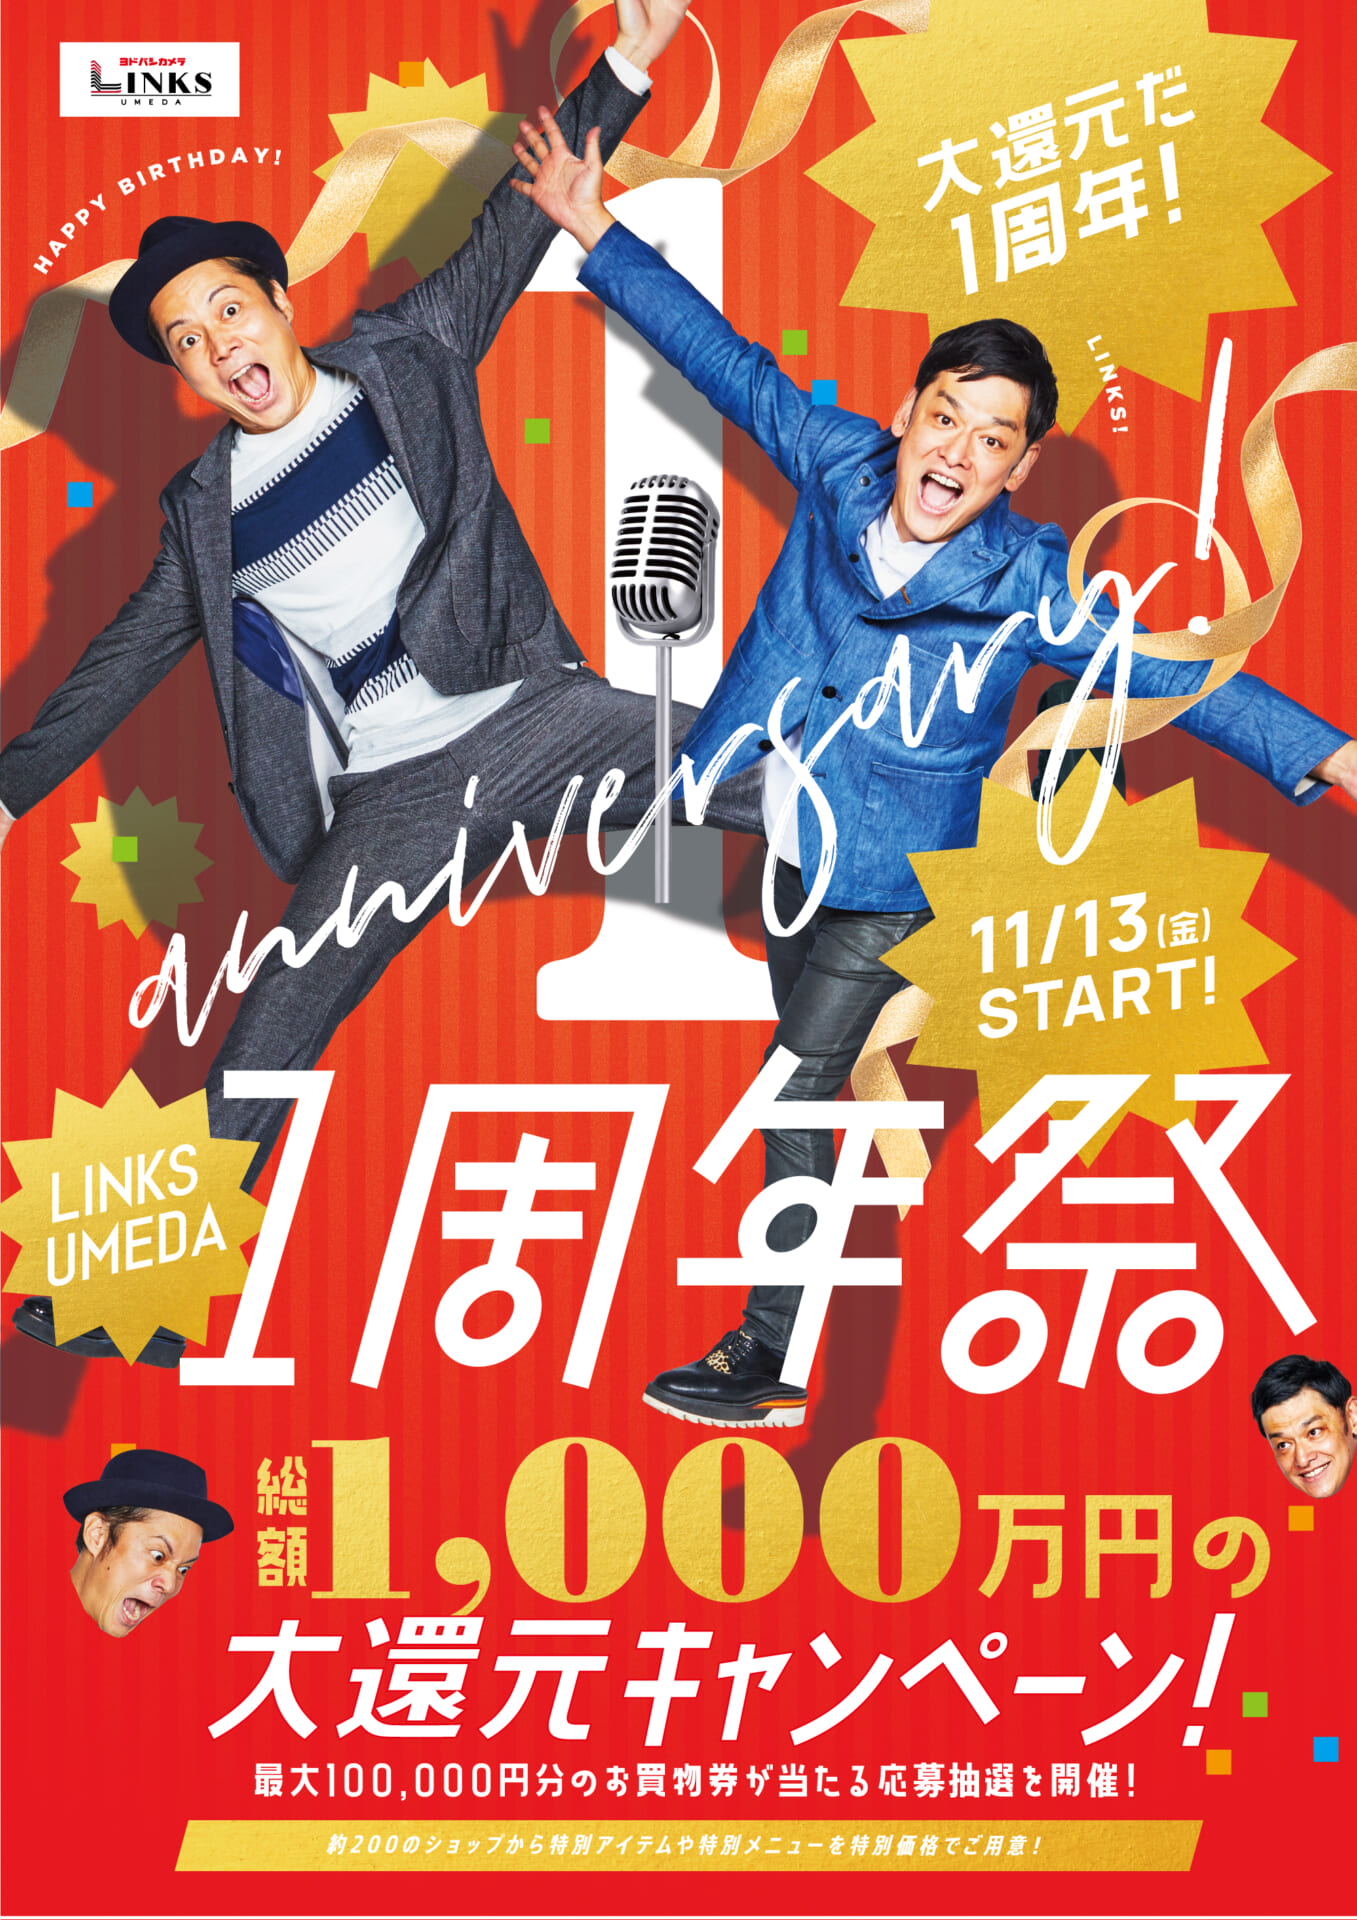 大阪・梅田の「LINKS UMEDA」で1周年祭が開催決定！超豪華なキャンペーンに、お笑いコンビ・シャンプーハットとコラボ企画も